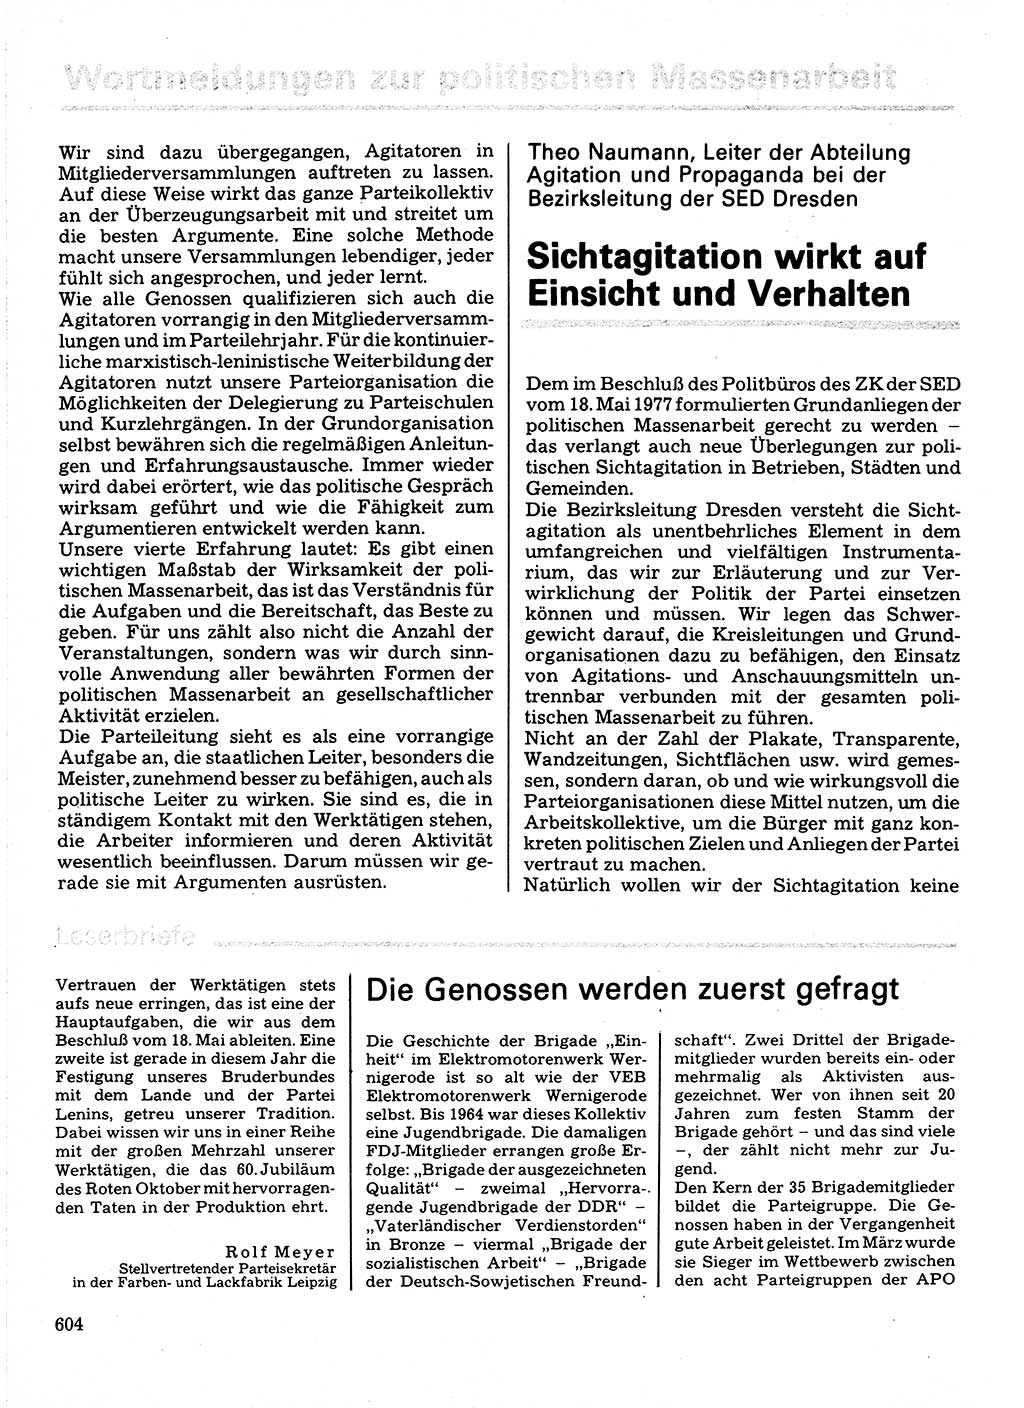 Neuer Weg (NW), Organ des Zentralkomitees (ZK) der SED (Sozialistische Einheitspartei Deutschlands) für Fragen des Parteilebens, 32. Jahrgang [Deutsche Demokratische Republik (DDR)] 1977, Seite 604 (NW ZK SED DDR 1977, S. 604)